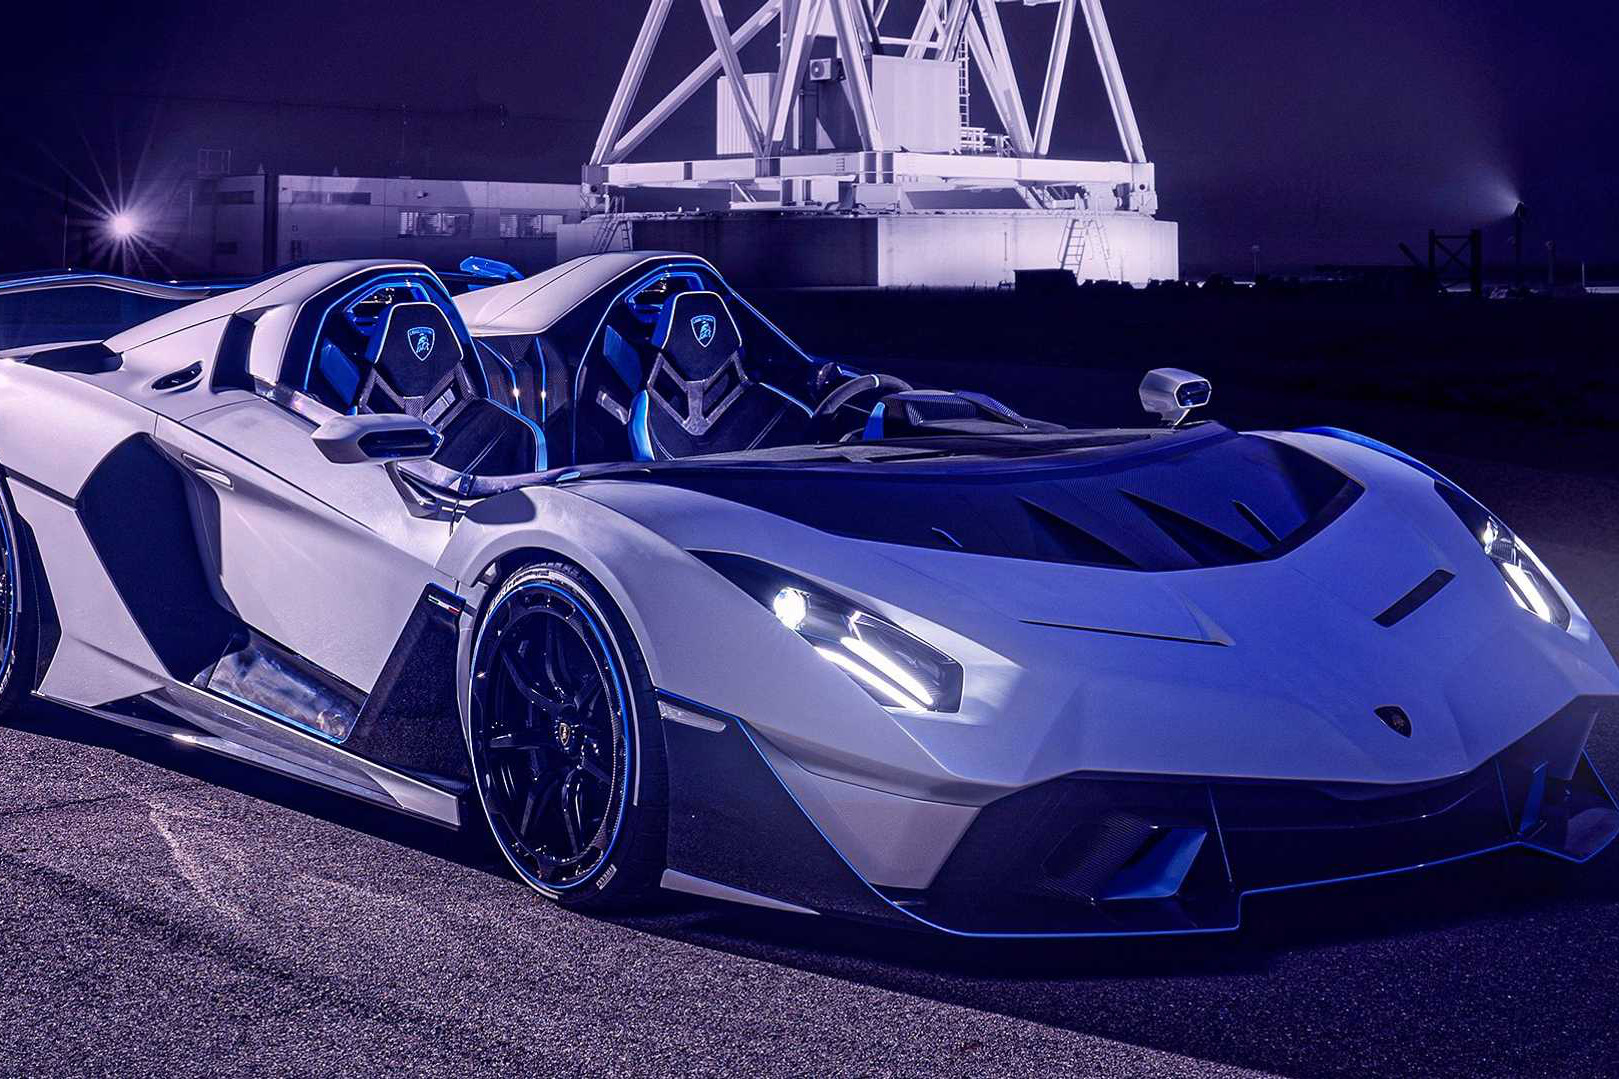 Lamborghini Aventador sắp có thế hệ kế nhiệm dùng động cơ V12 nhưng phải hybrid hóa